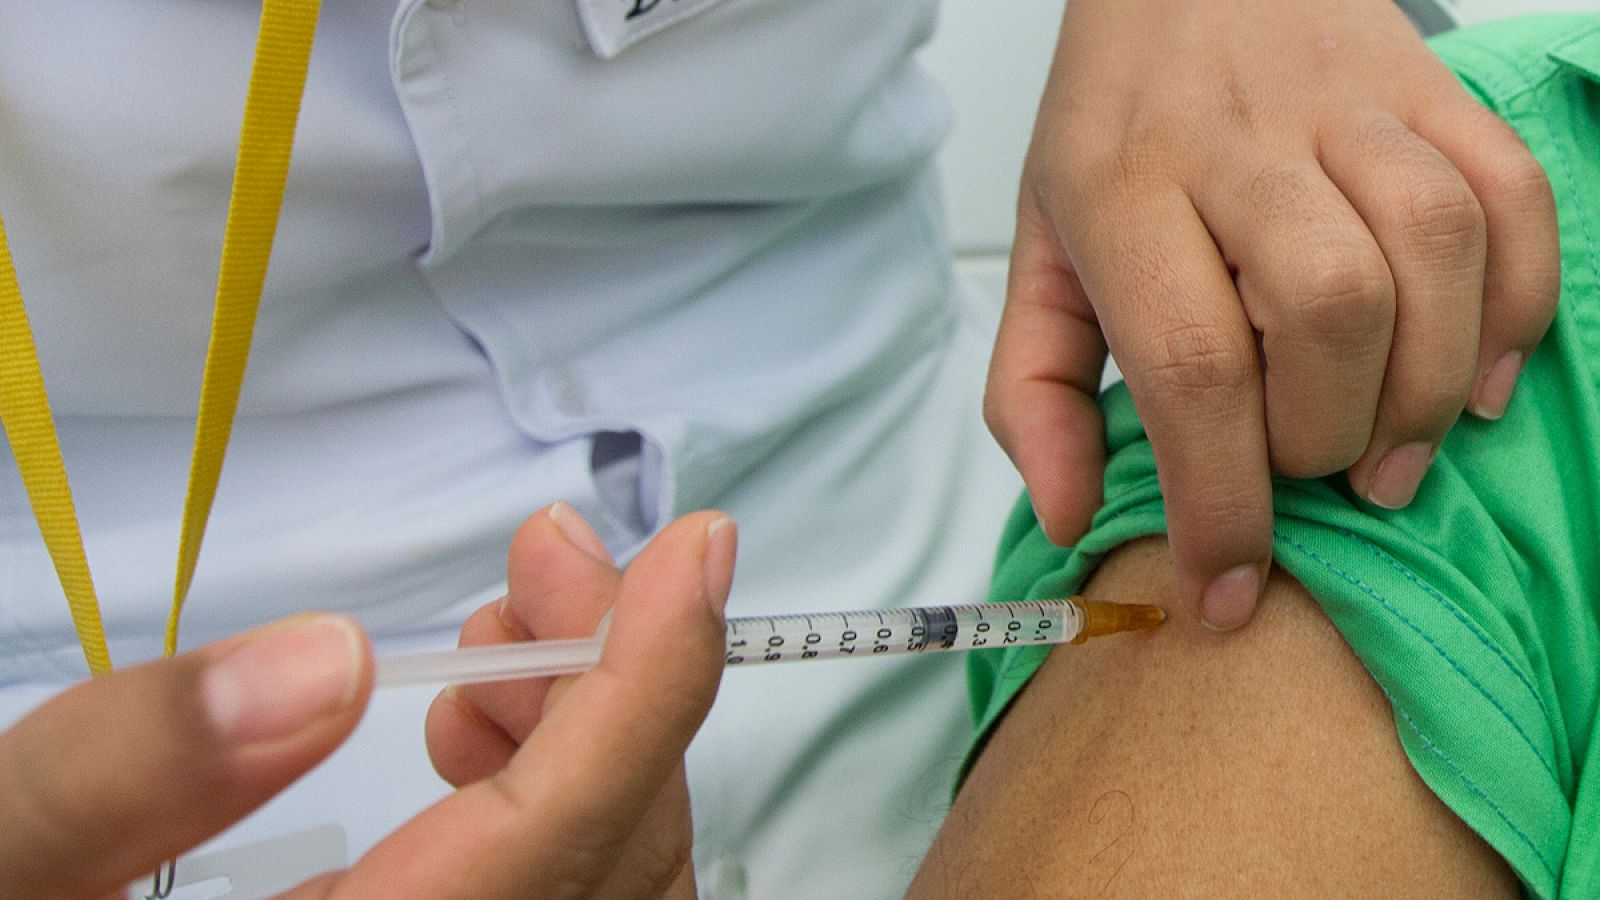 Investigadores de la Universidad de Berkeley quieren impulsar la desaparición de las agujas en los procesos de vacunación.